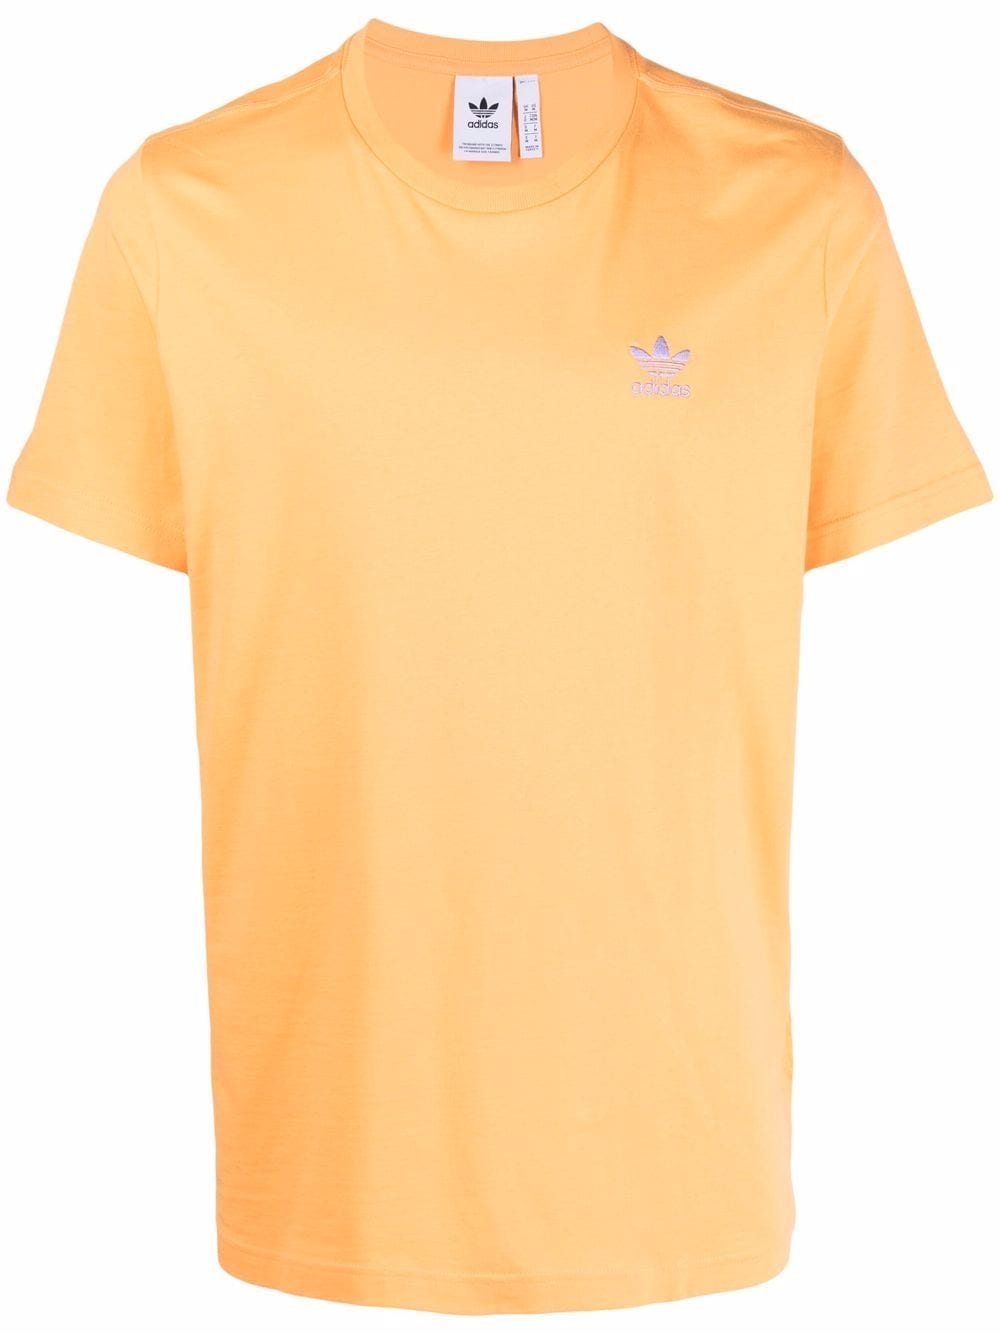 Adidas Originals Logo刺绣t恤 In Orange